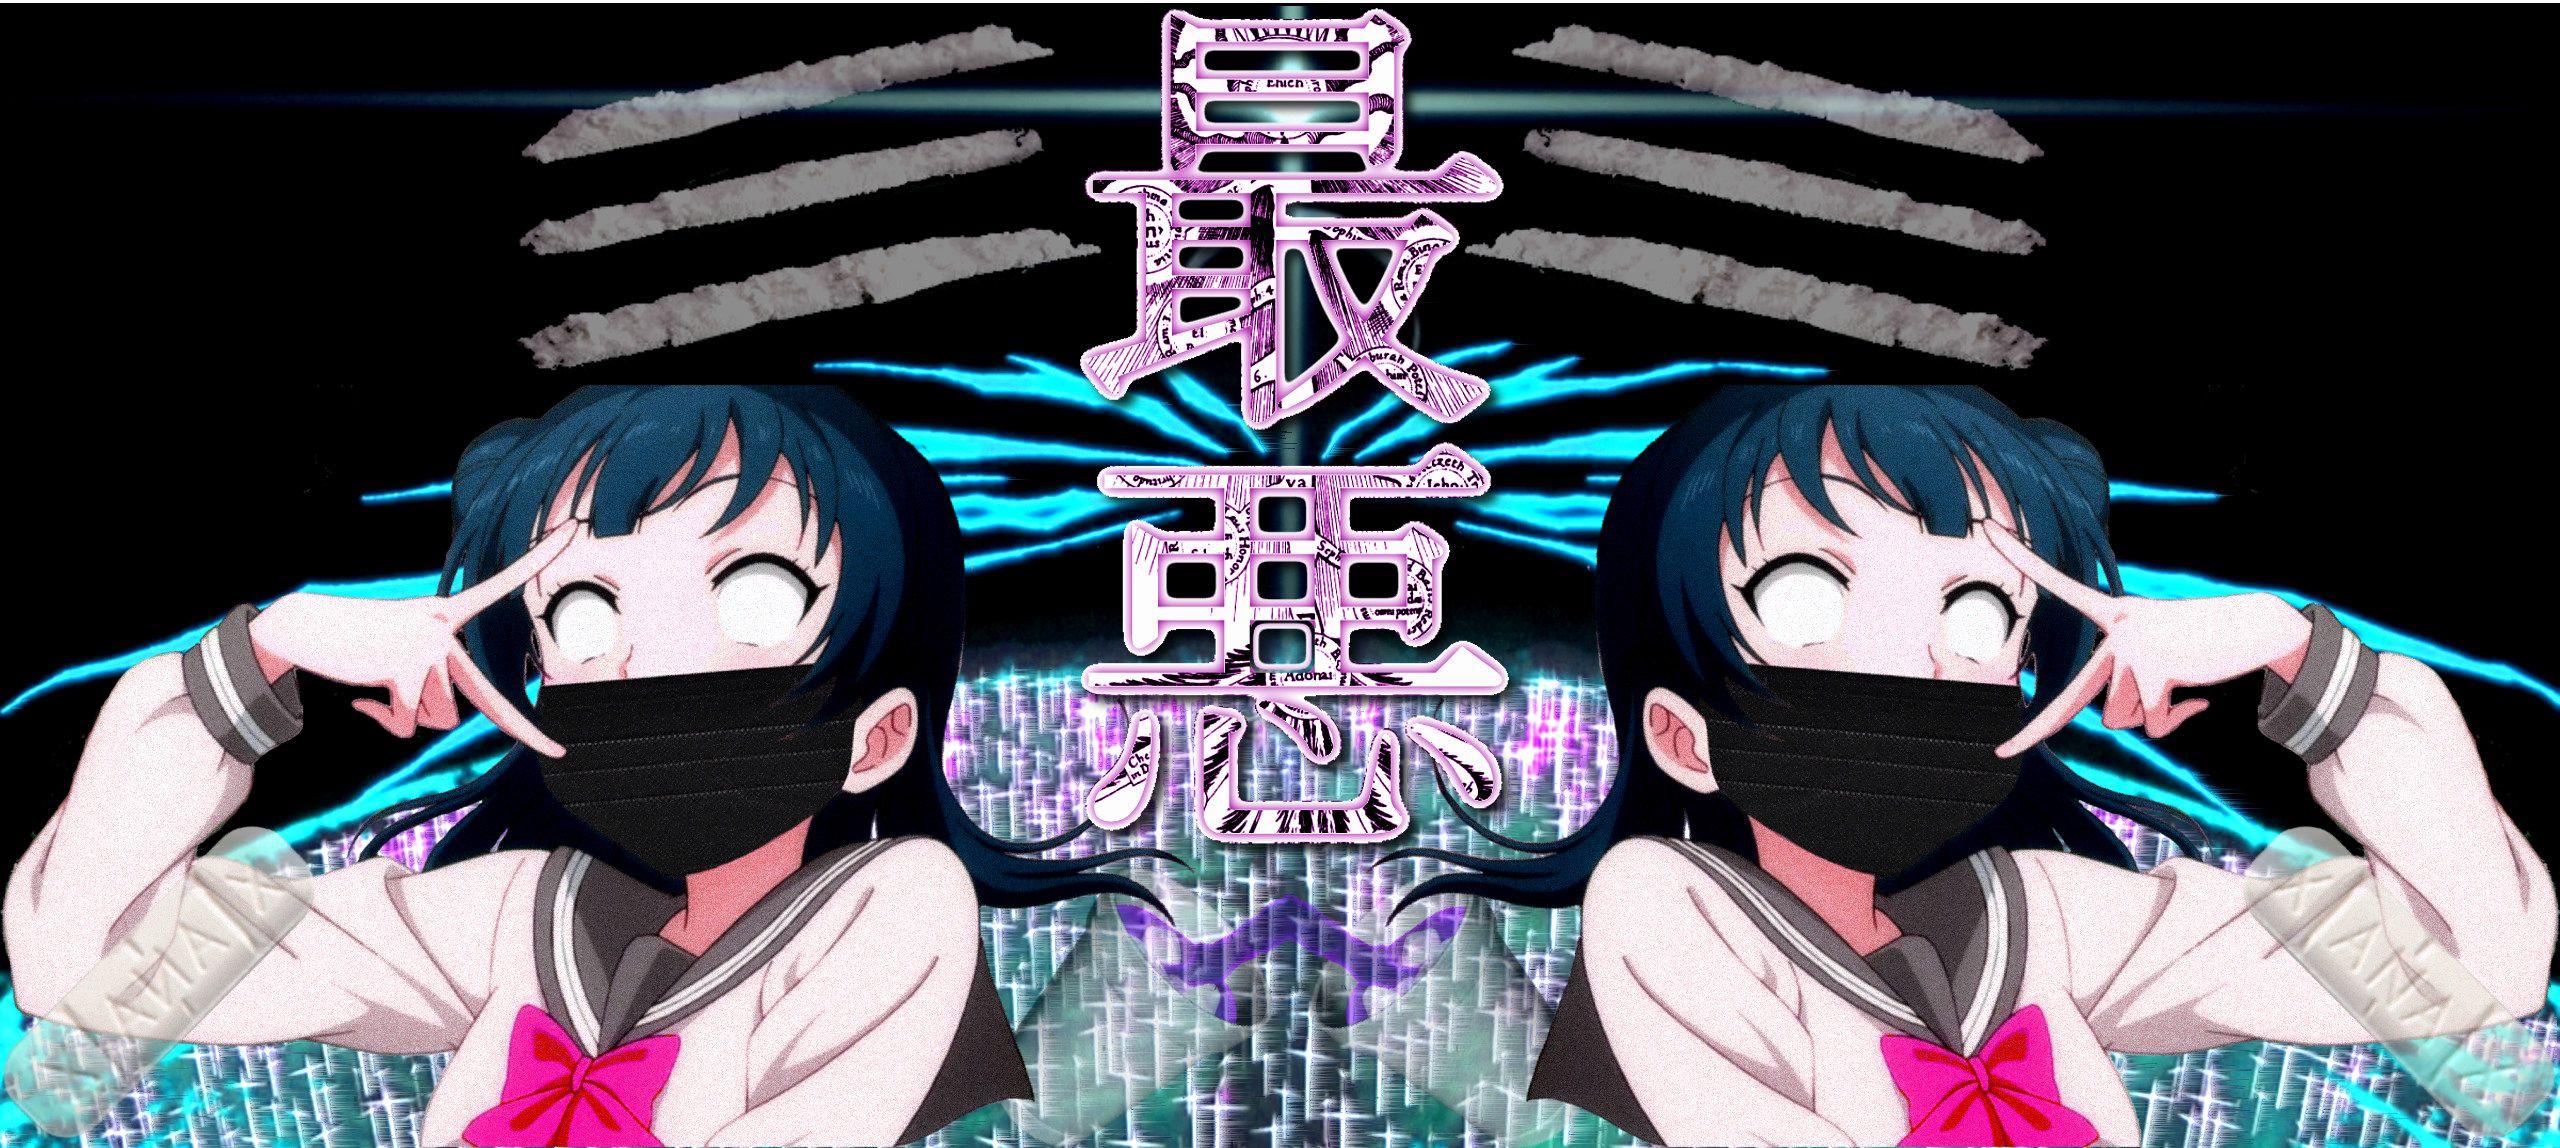 2560 x 1148 · jpeg - Aesthetic Vaporwave Anime Girl - Anime Wallpaper